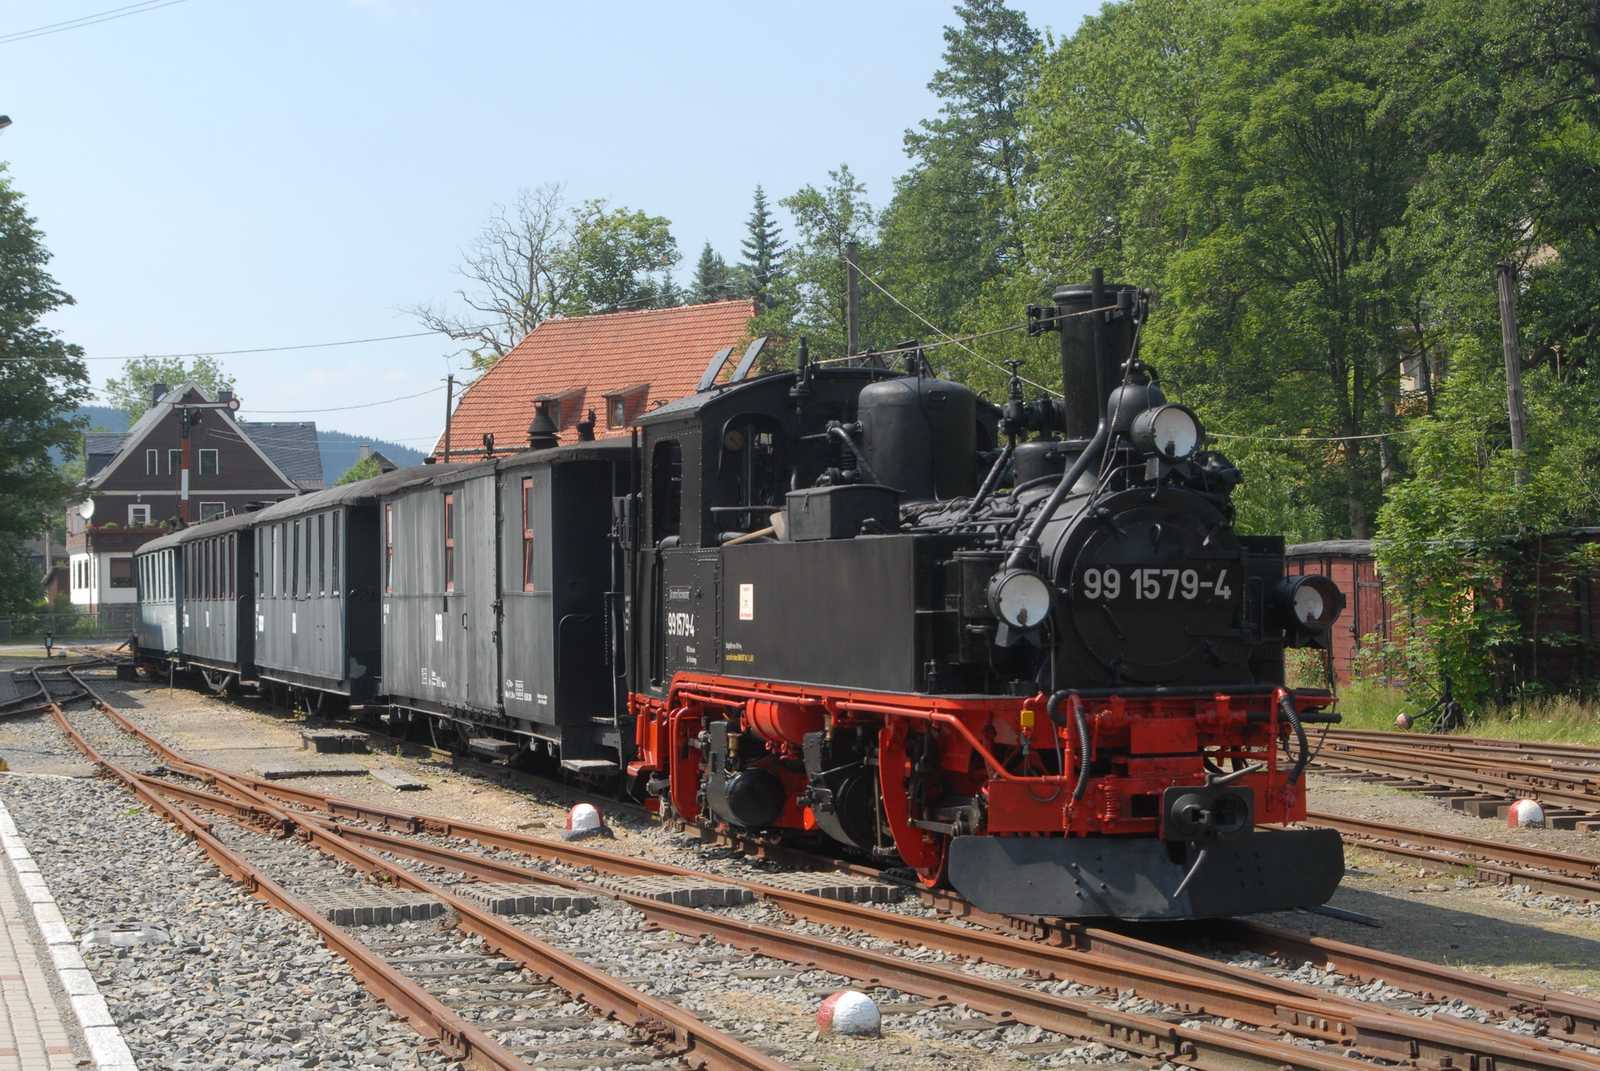 Am 3. Juli fand im Sächsischen Schmalspurbahn-Museum in Rittersgrün ein Fototag mit 99 579 statt. Dabei wurden ganztägig verschiedene Zugvarianten und Fotomotive zusammengestellt, wie sie einst in Oberrittersgrün zu erleben waren.